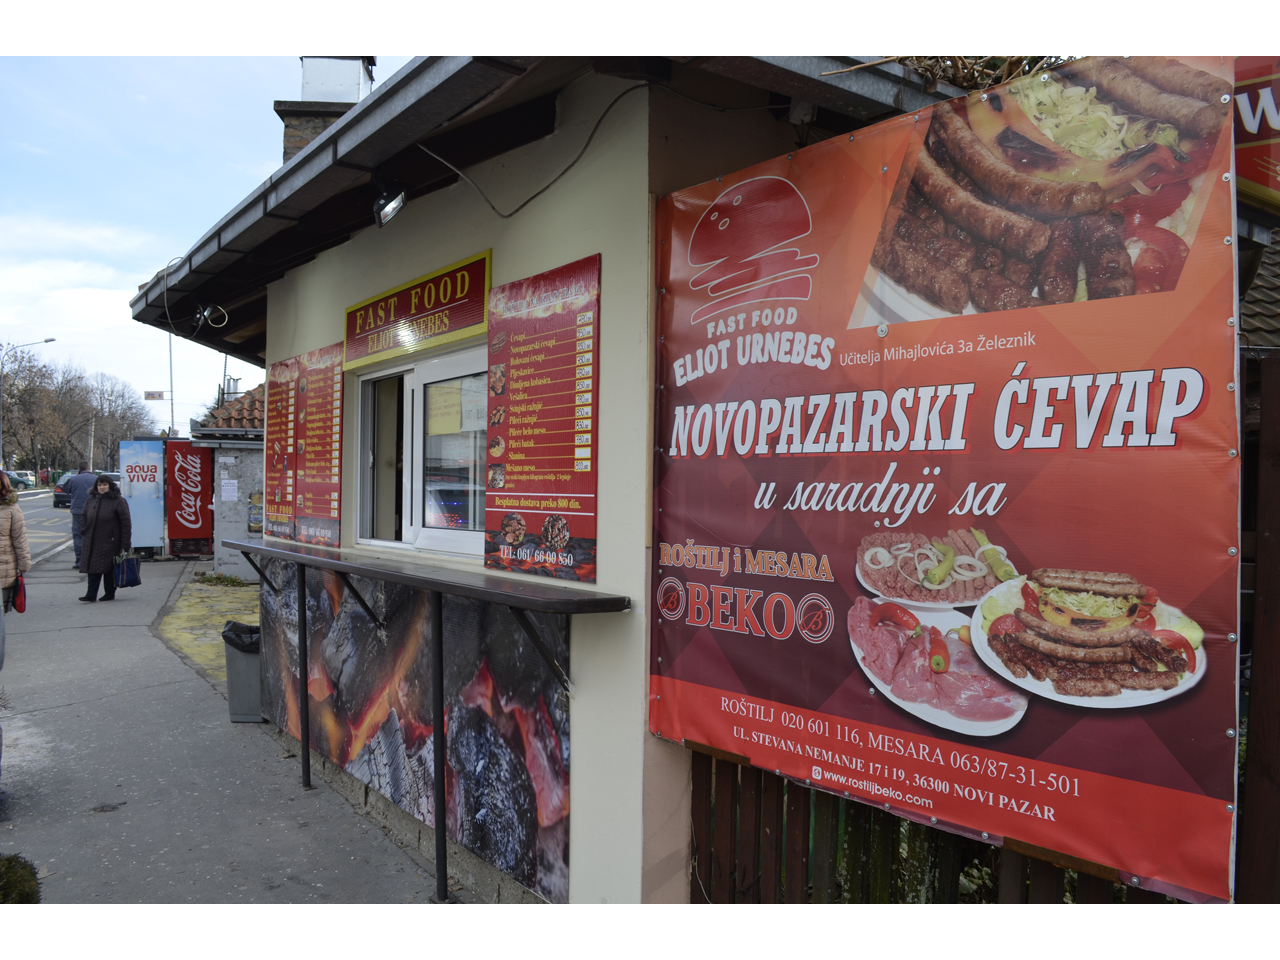 FAST FOOD ELIOT URNEBES Fast food Beograd - Slika 1